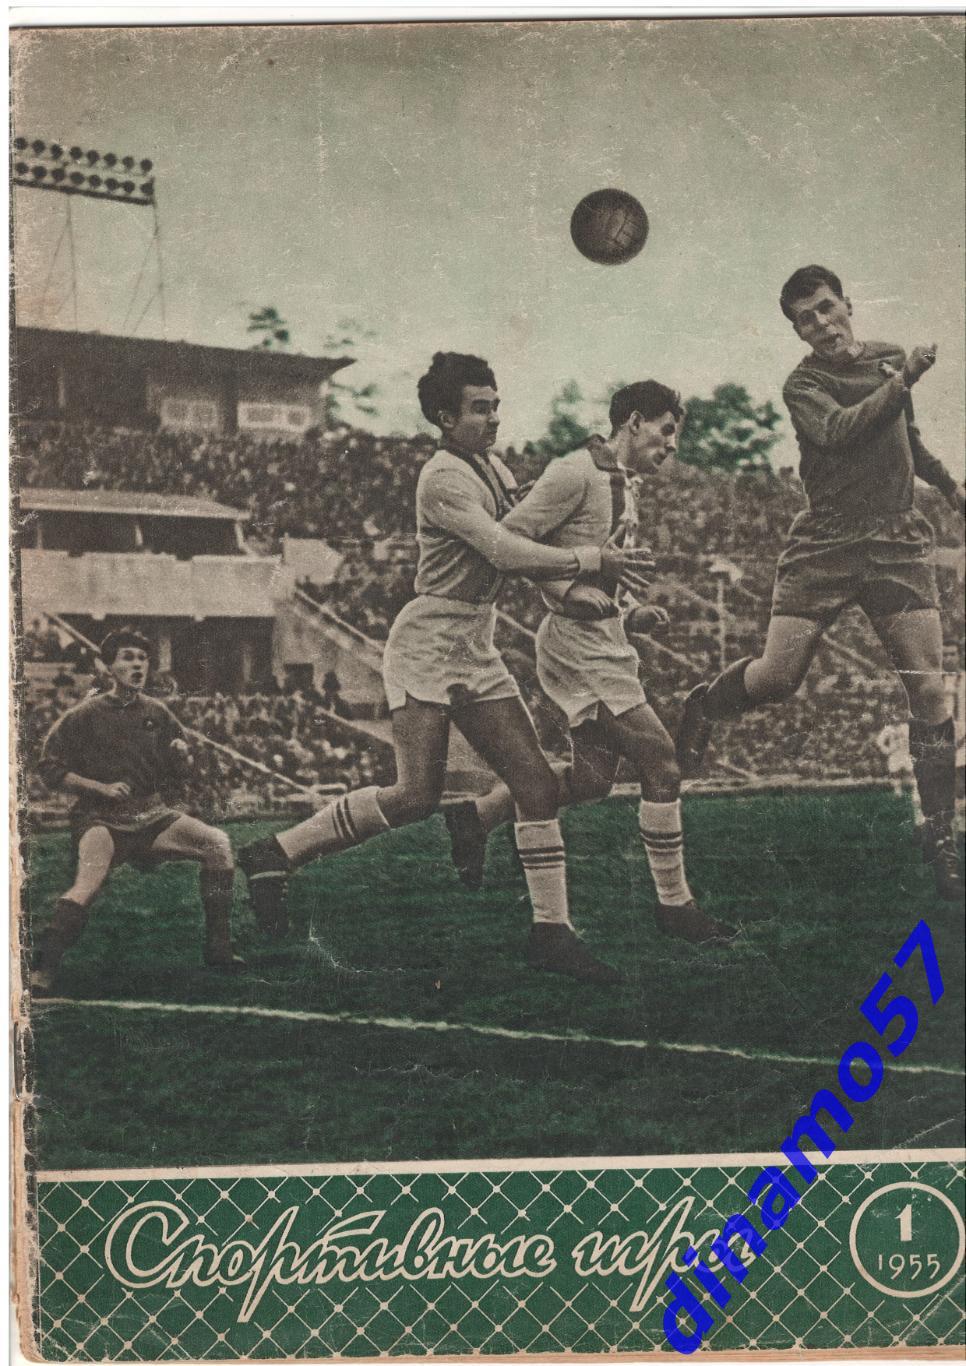 Журнал Спортивные игры№ 1 1955